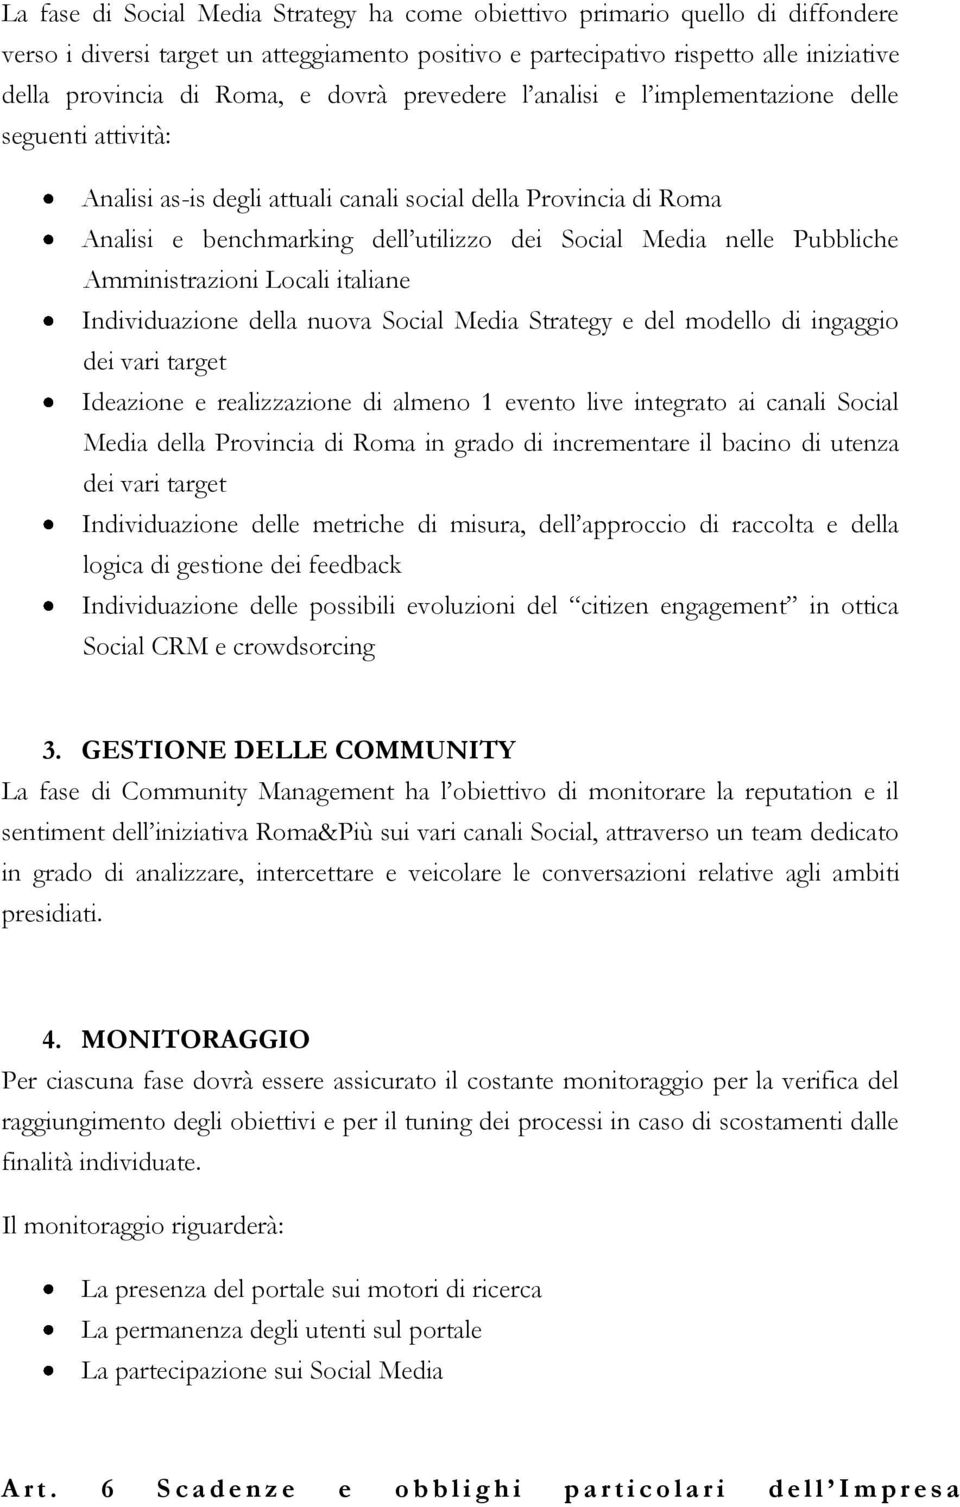 Pubbliche Amministrazioni Locali italiane Individuazione della nuova Social Media Strategy e del modello di ingaggio dei vari target Ideazione e realizzazione di almeno 1 evento live integrato ai